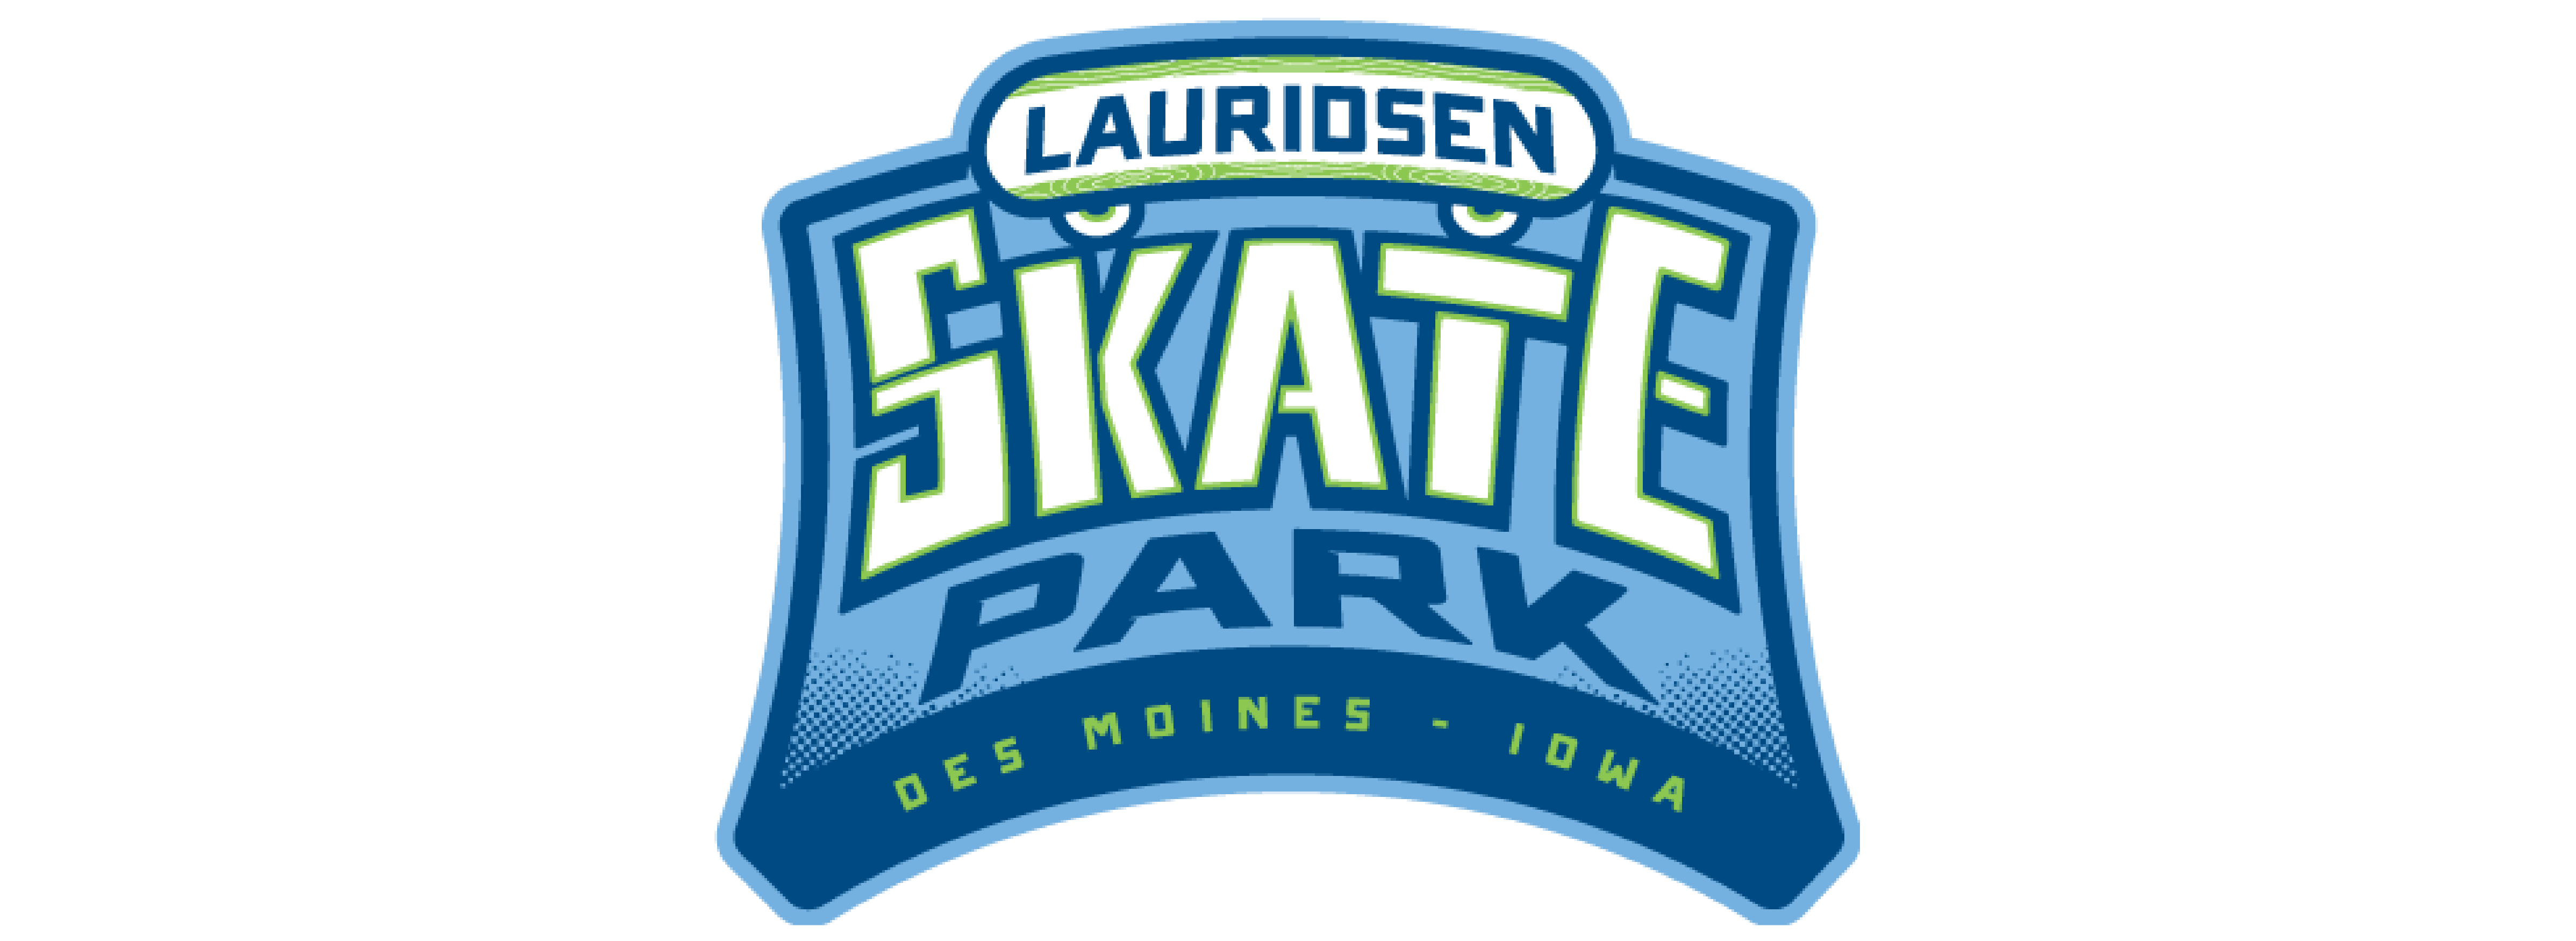 Lauridsen Skate Park DSM